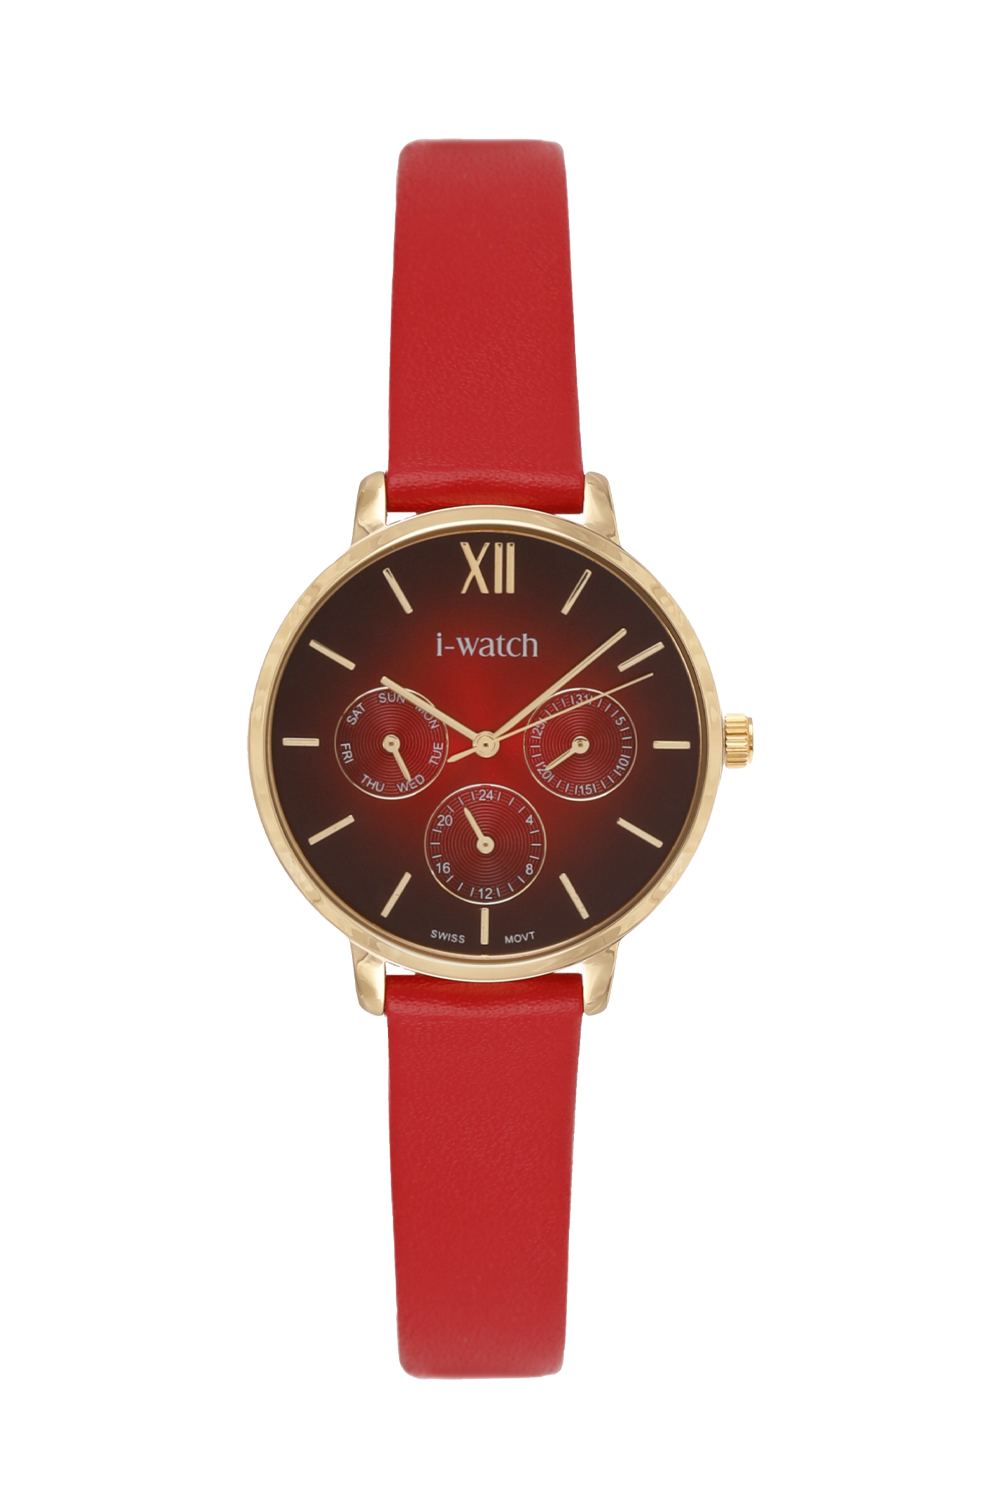 تصویر  ساعت مچی آی واچ کرنو چرمی طلایی صفحه قرمز بند قرمز زنانه 190168